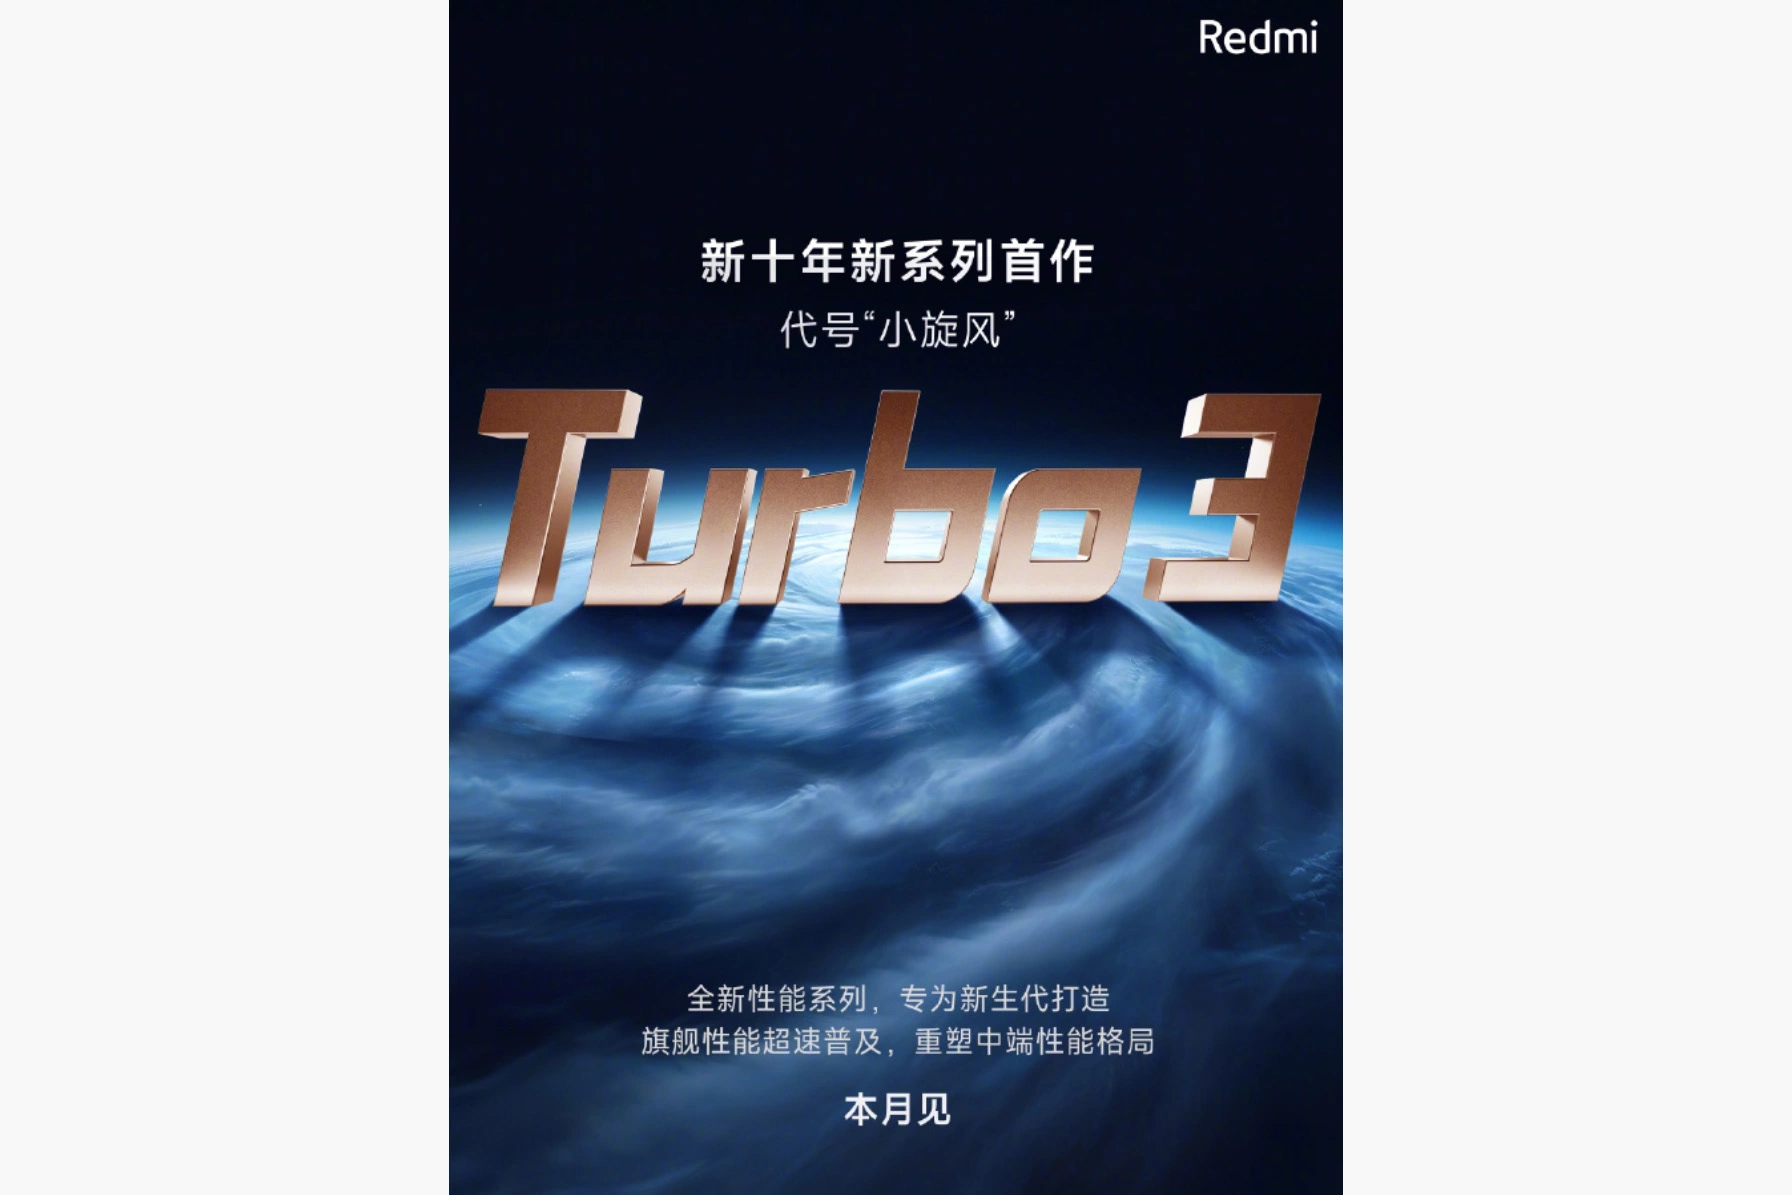 <p>Постер с анонсом смартфона Redmi Turbo 3</p>